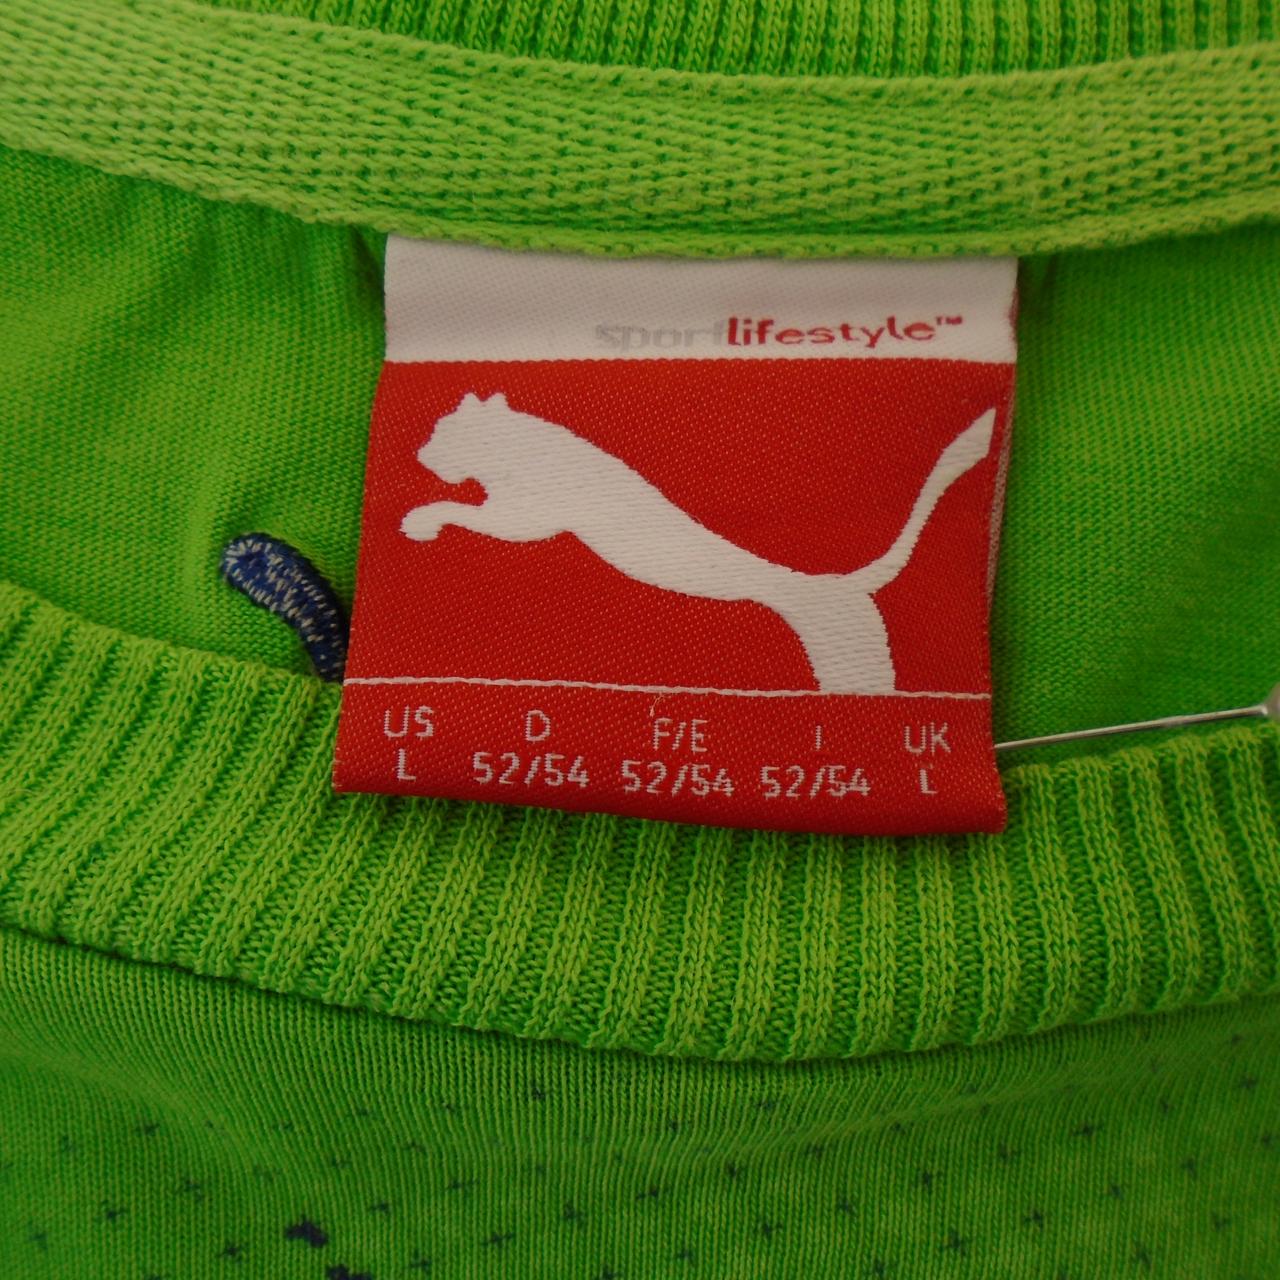 Camiseta de hombre Puma.  Verde.  L.Usado.  Bien